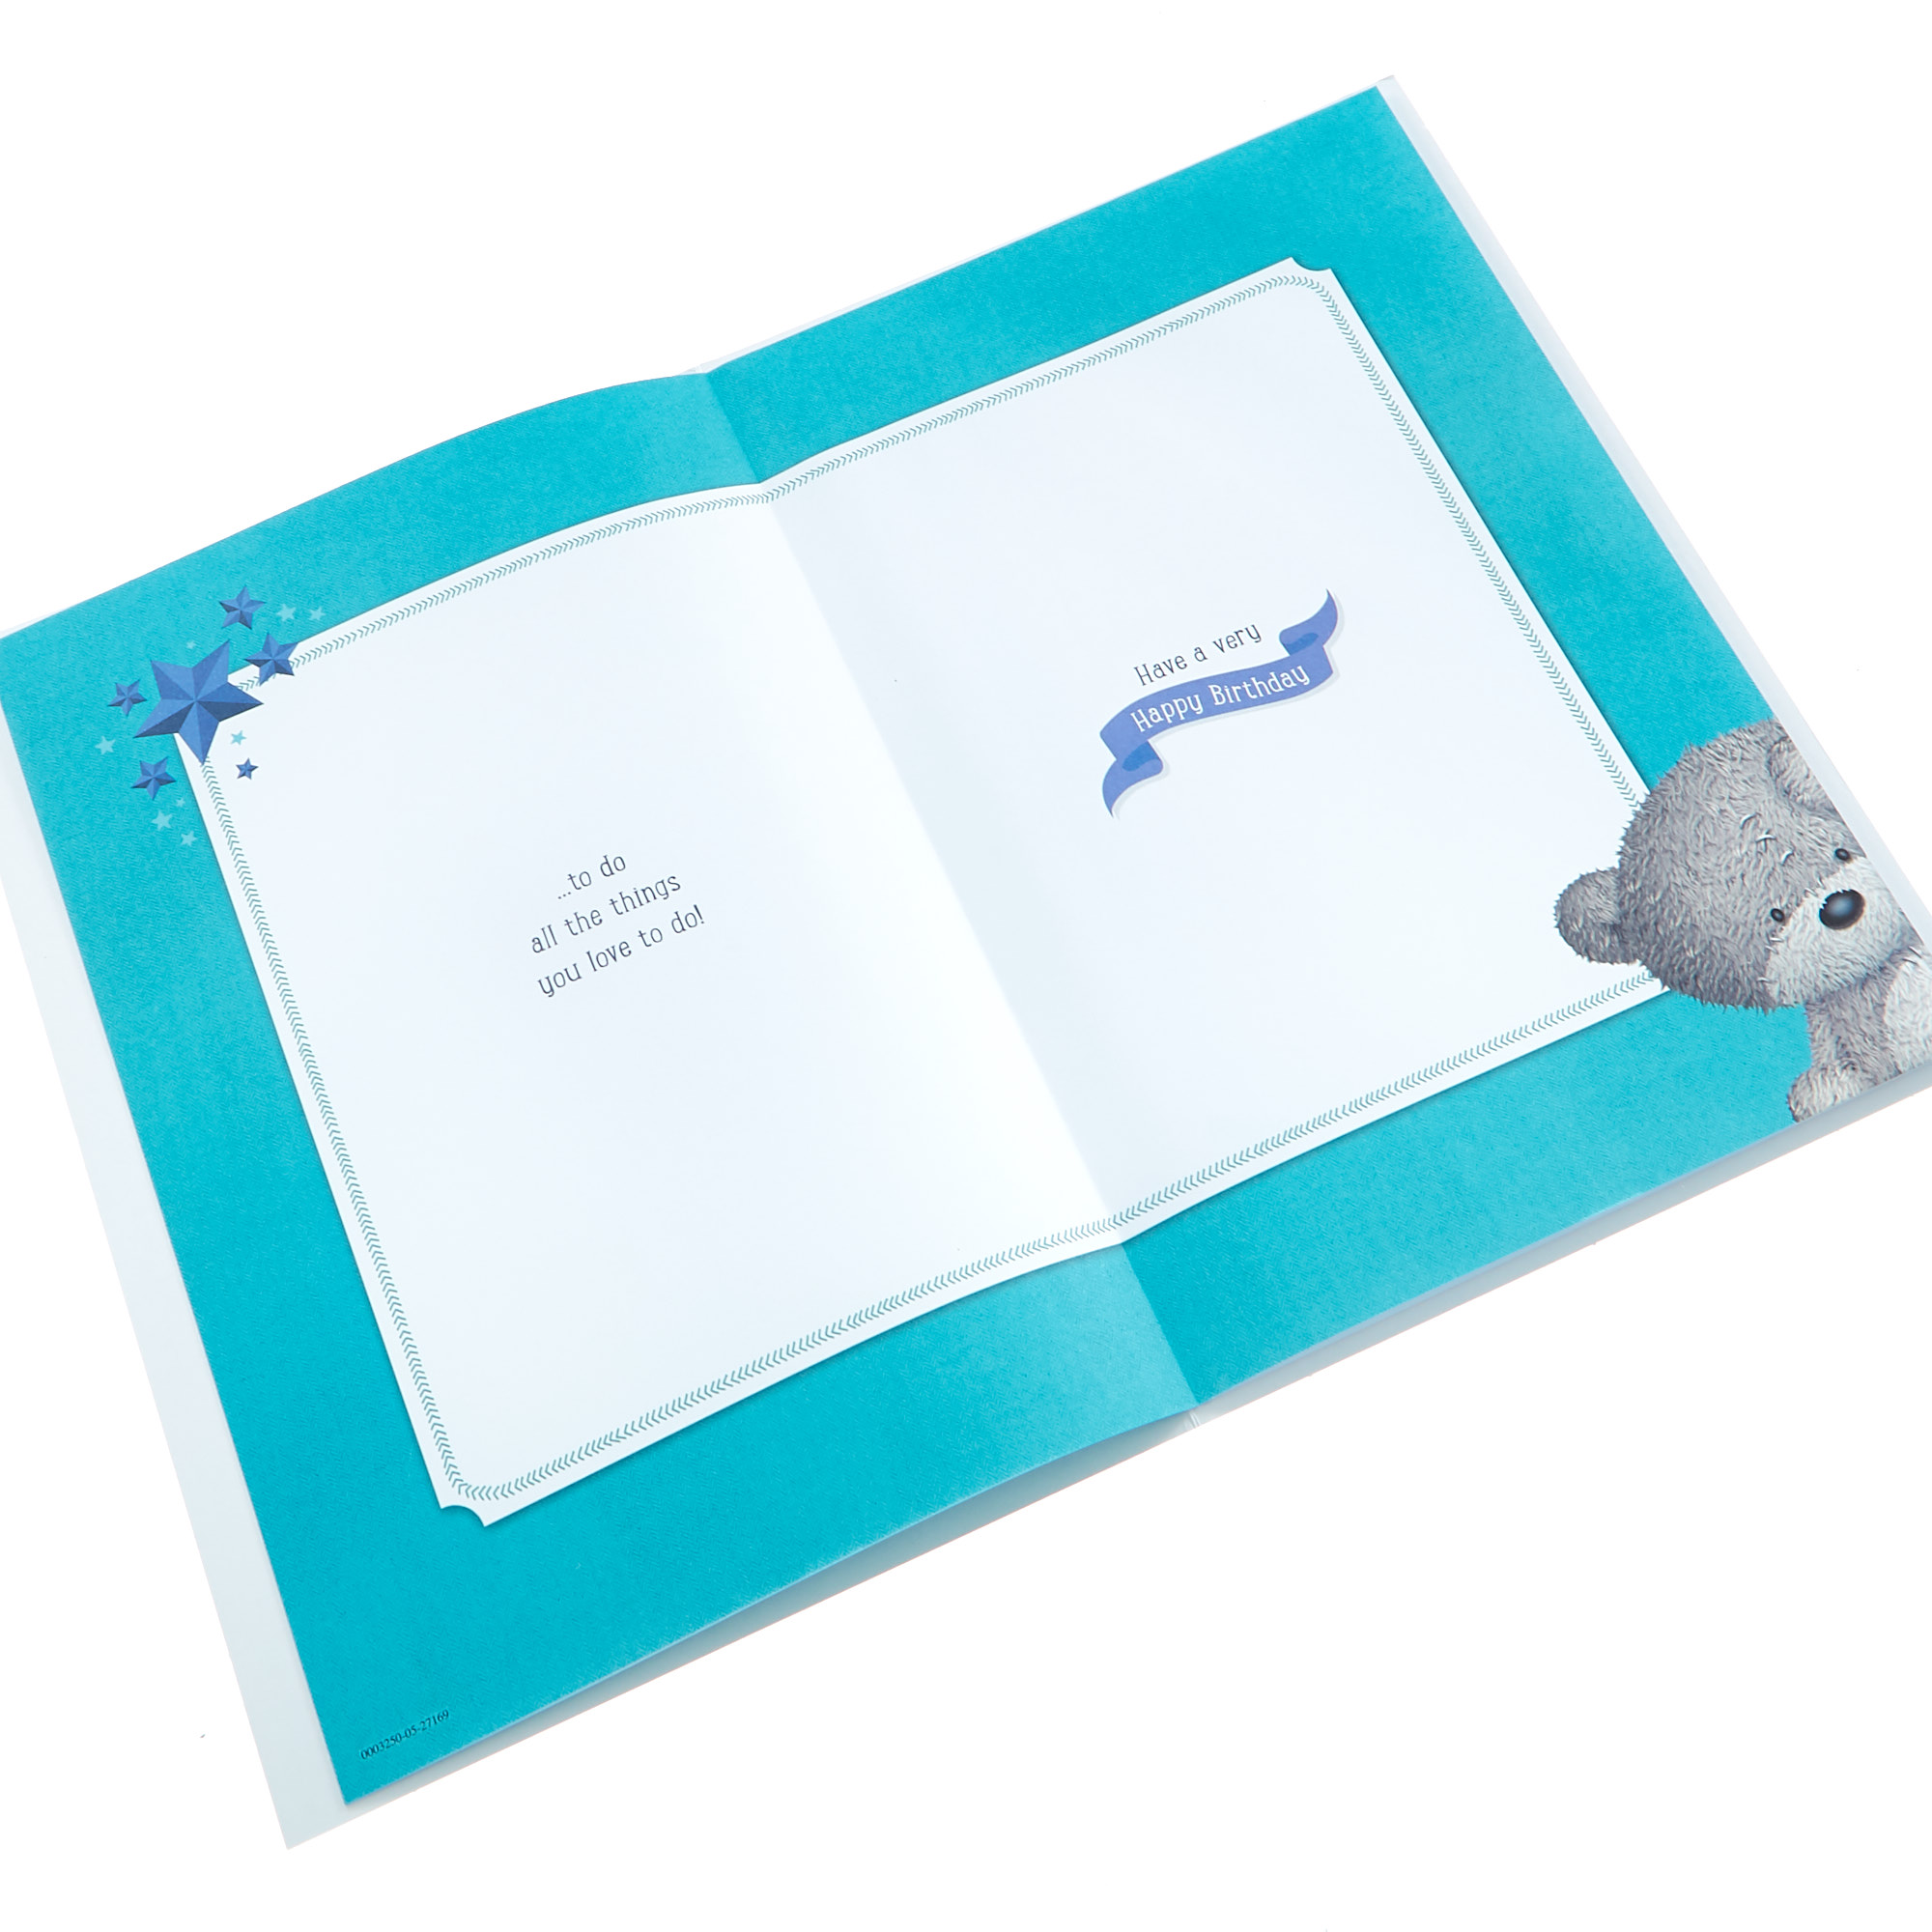 Hugs Bear Birthday Card - Hit The Deck